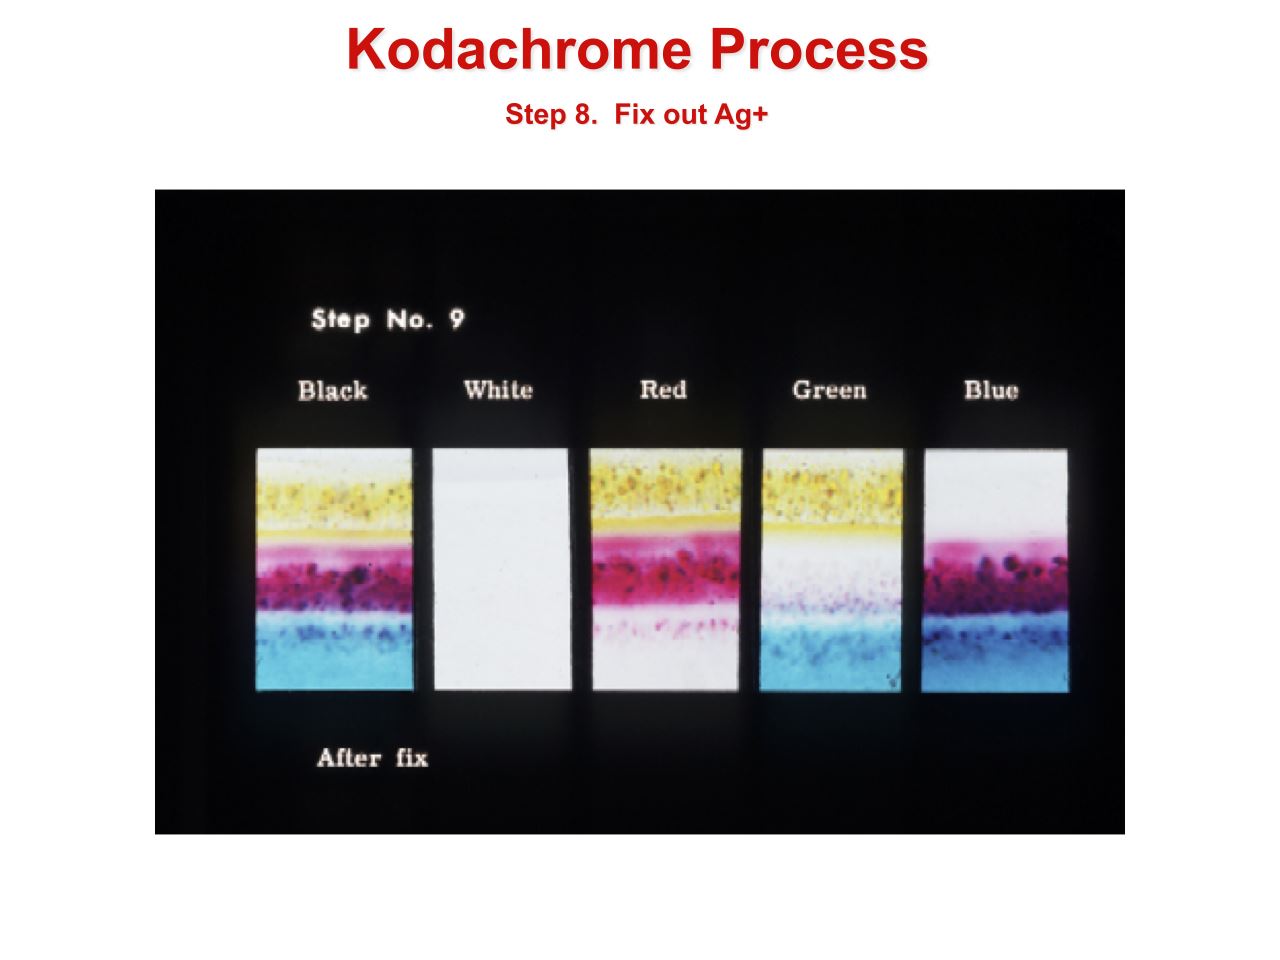 How to Develop Kodachrome Film (B&W Hand Processing & Kodak's K-14 Process)